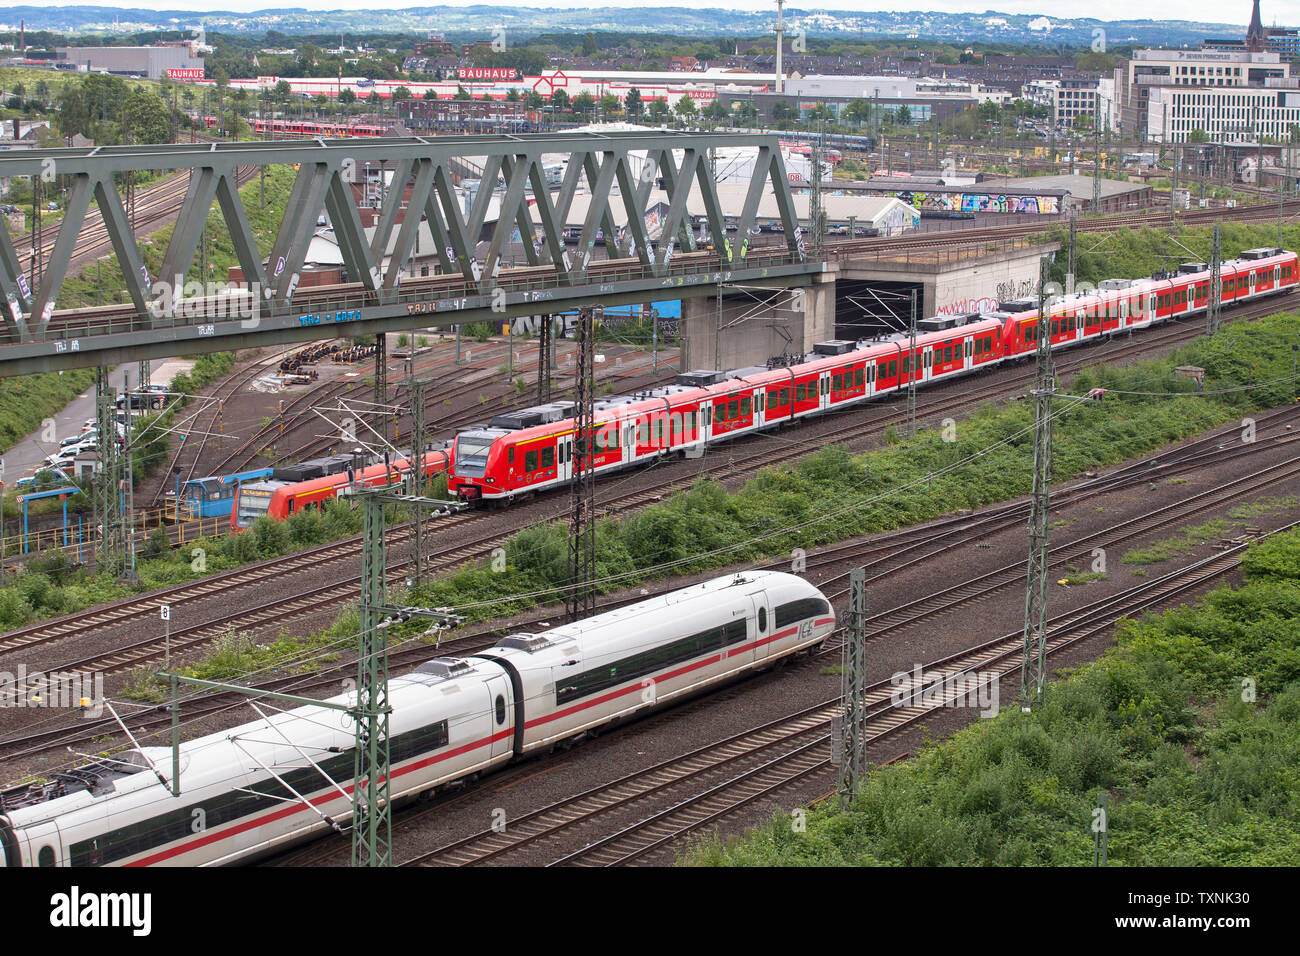 high-speed train ICE and local train Regionalbahn in the town district Deutz, Cologne, Germany.  Hochgeschwindigkeitszug ICE und Regionallbahn im Stad Stock Photo